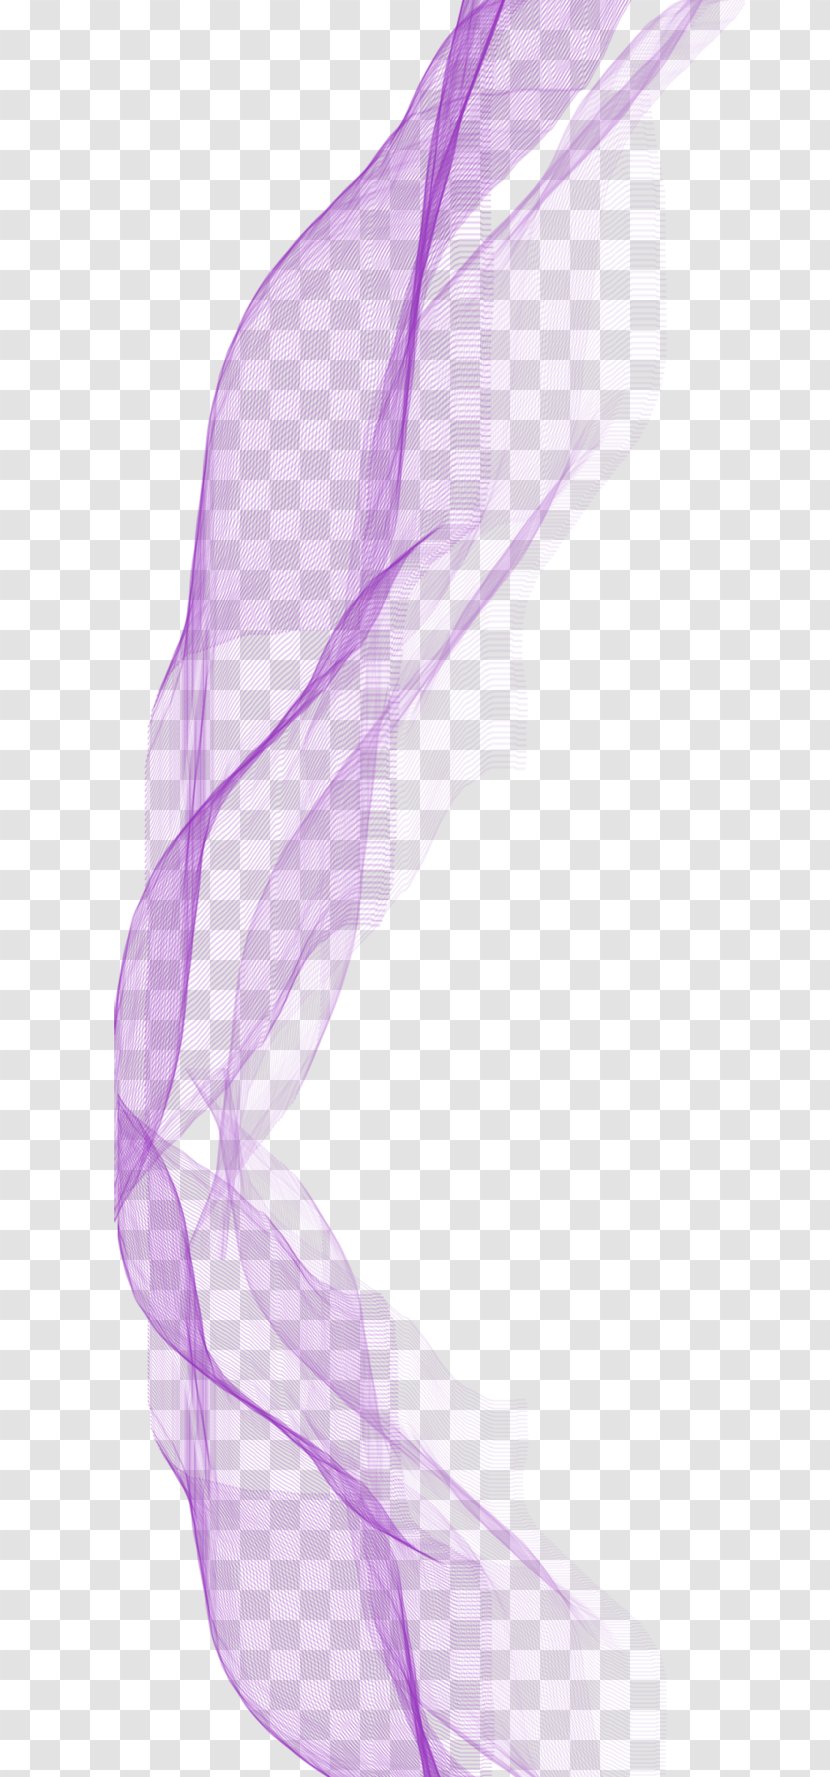 Purple Ribbon Download - Google Images - Gentle Floating Transparent PNG